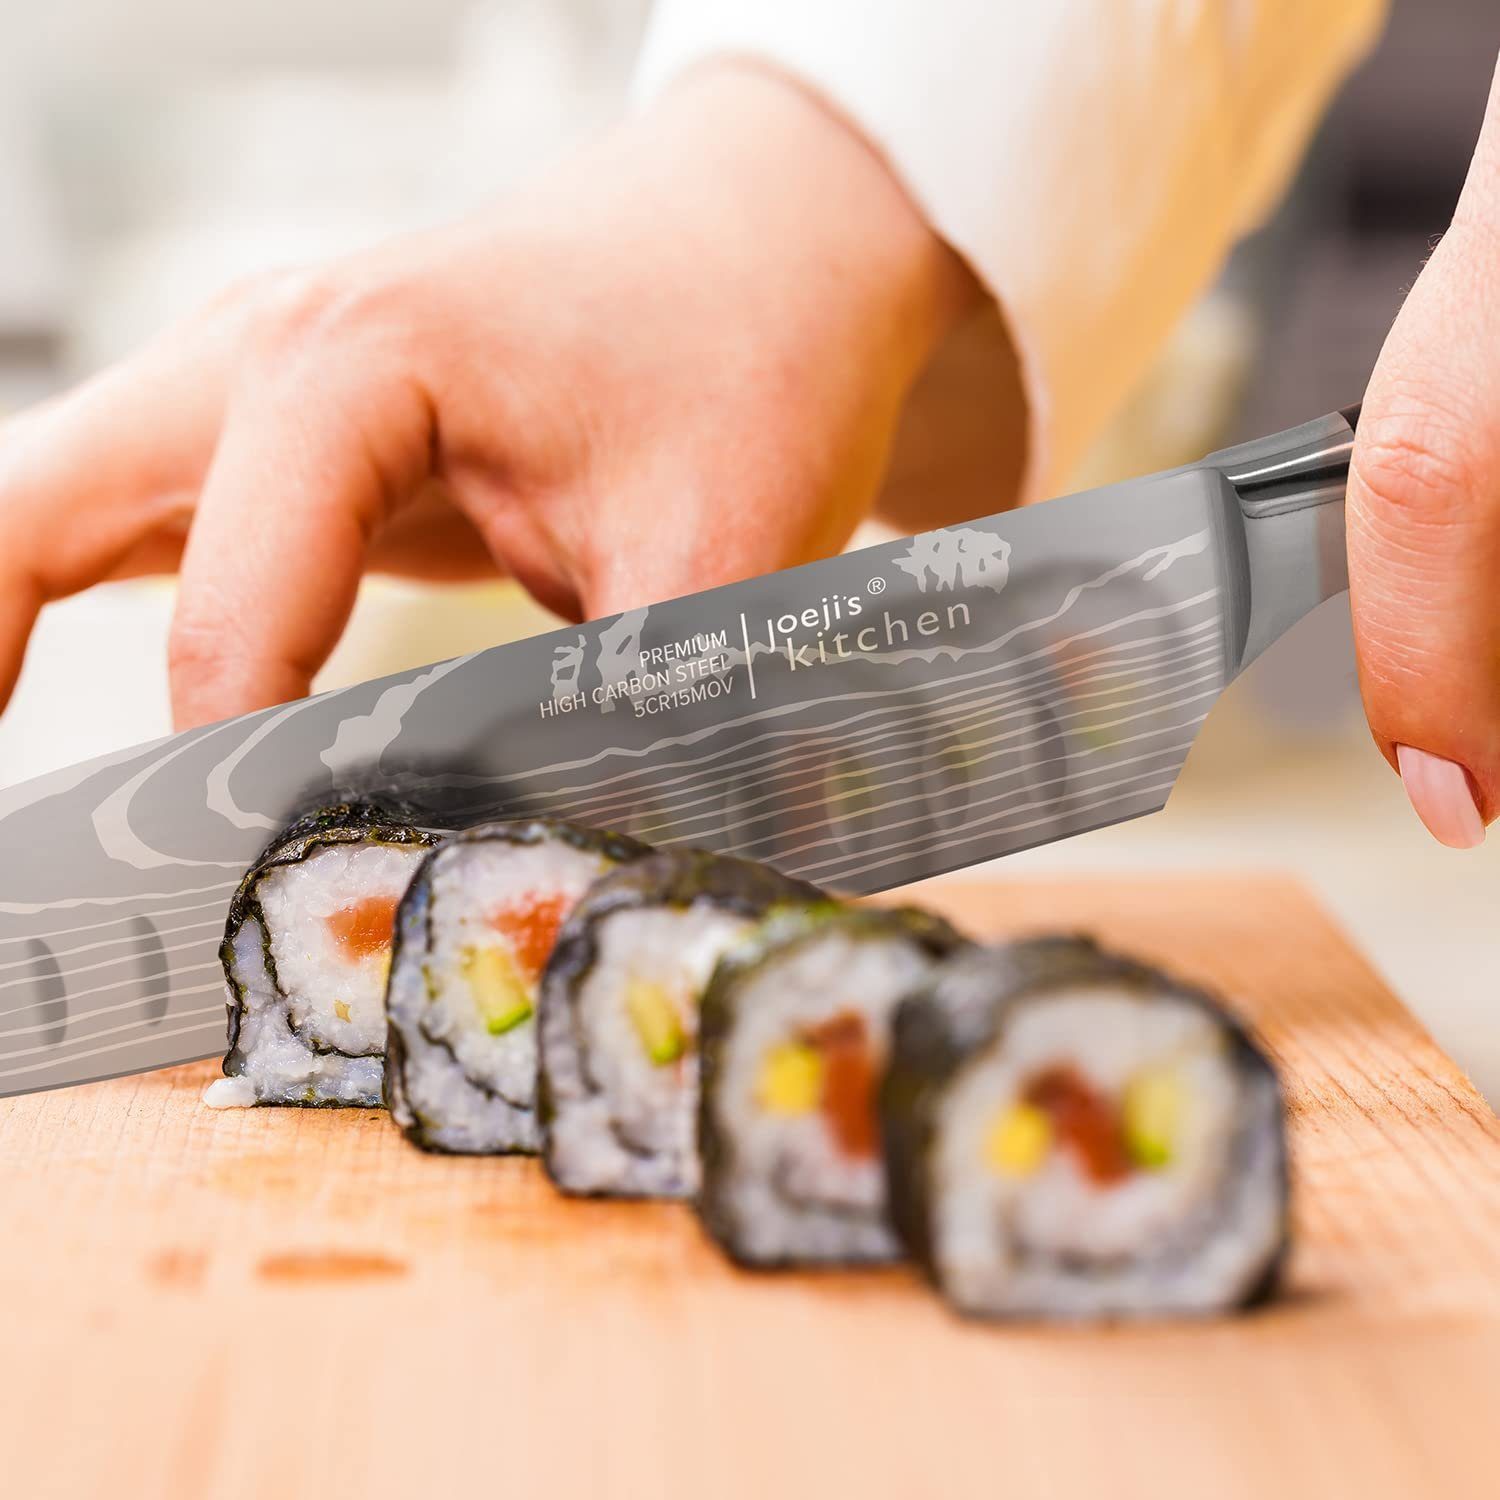 JOEJI’S KITCHEN Damastmesser japanisches Scharfes Messer Küchenmesser Messer Damast